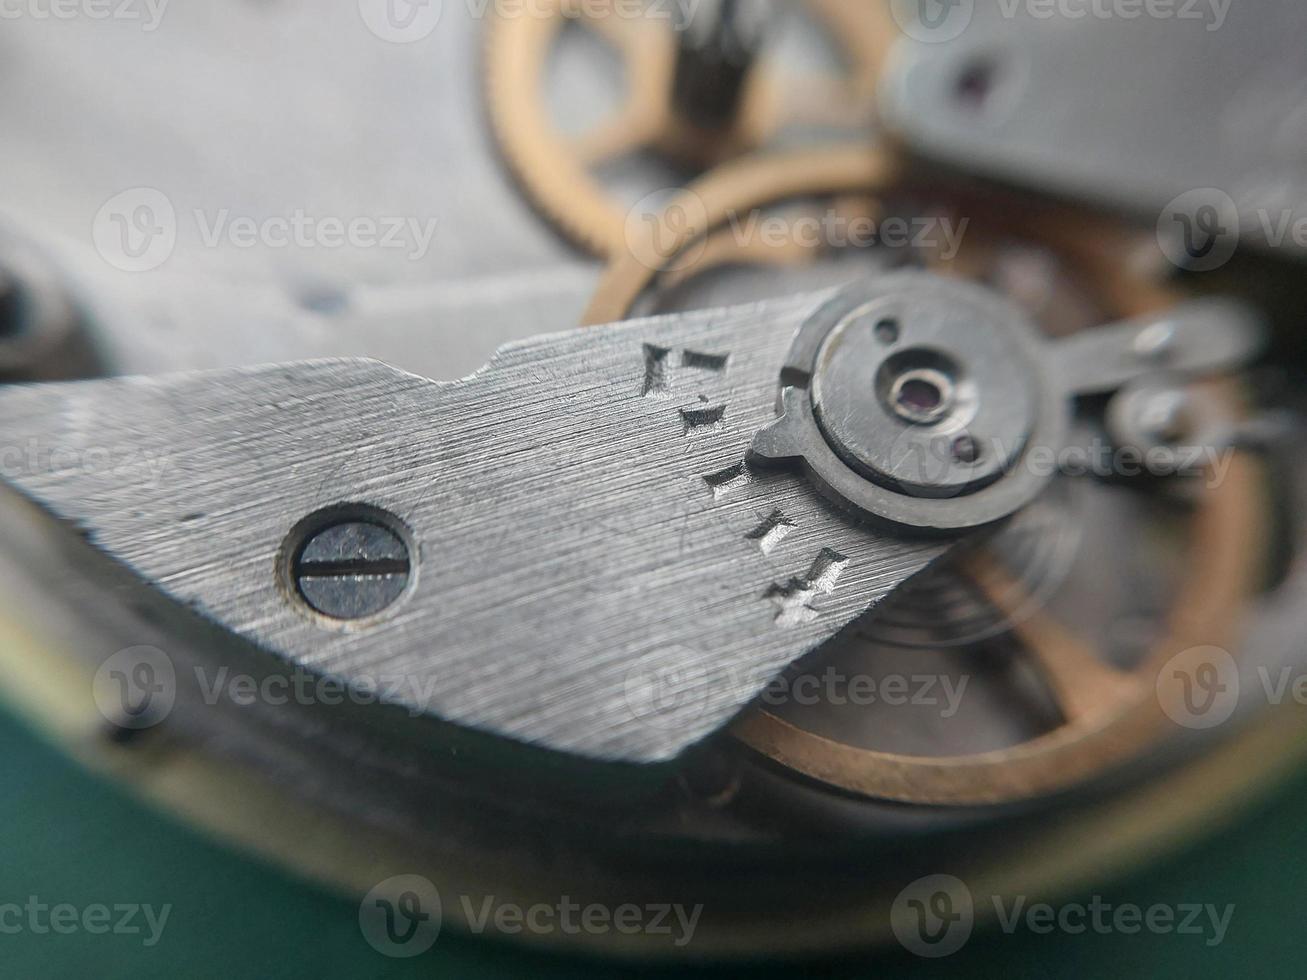 diverses pièces mécaniques d'une montre-bracelet photo